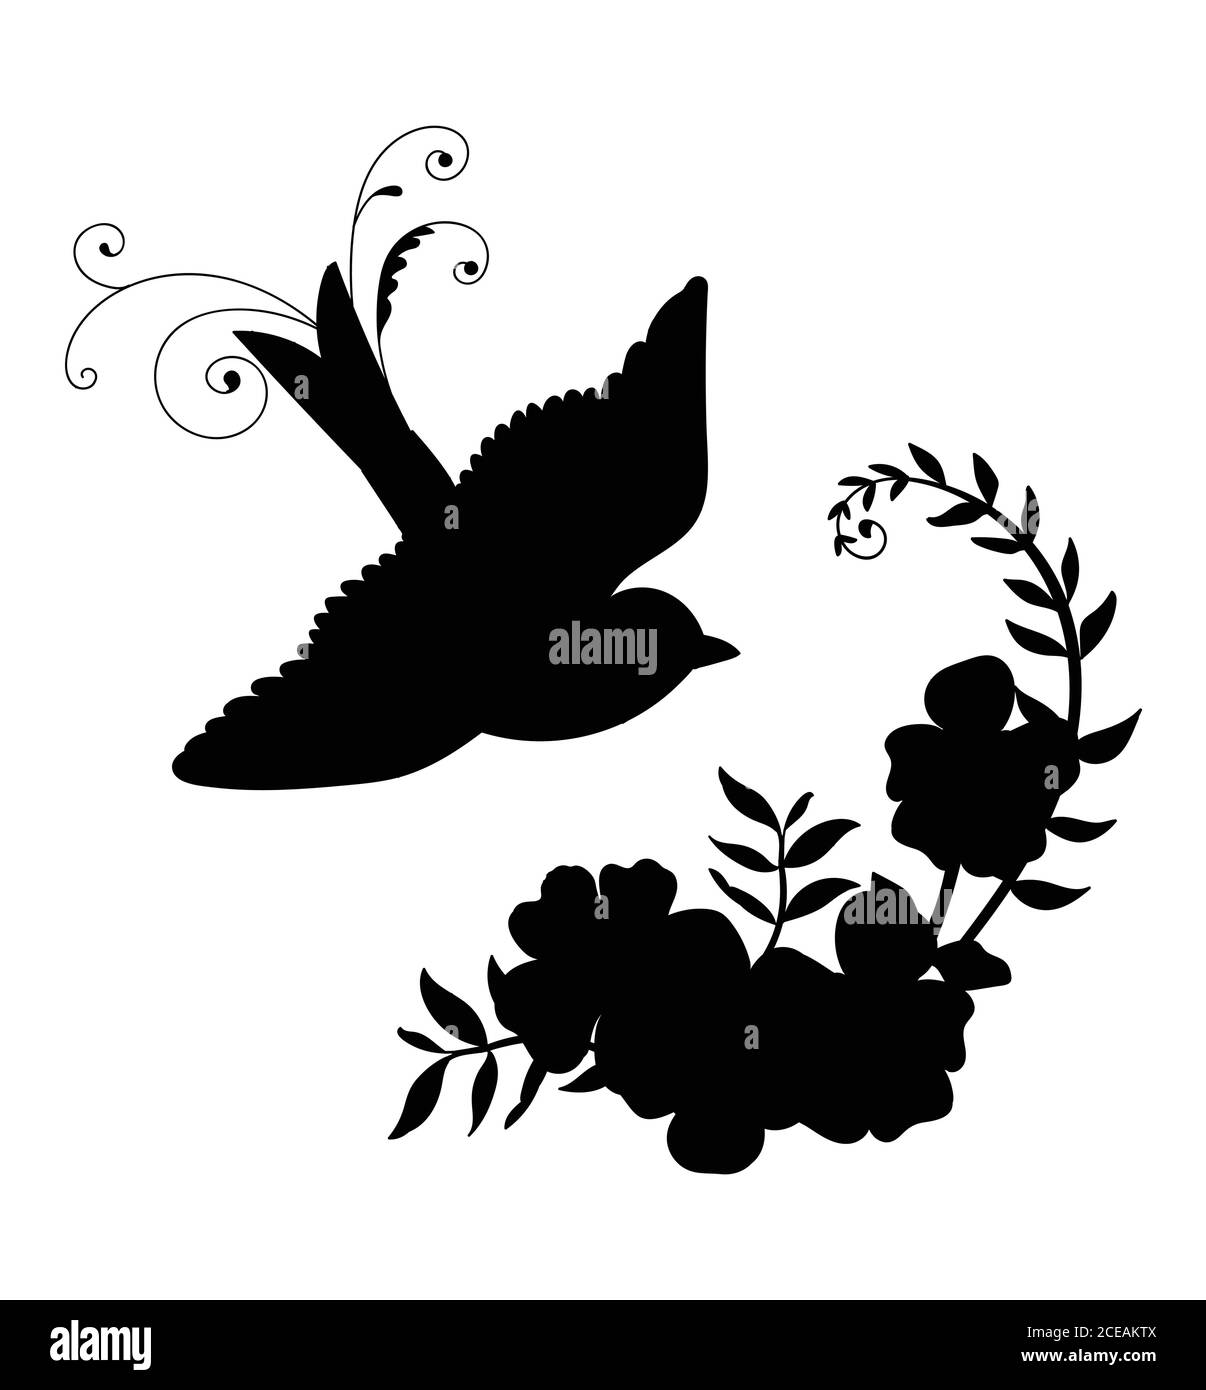 Vektor-Vorlage fliegenden Vogel und dekorative Blumen. Schwarze Silhouette Illustration isoliert auf weiß. Für Hochzeitseinladung, Design, Druck, T-Shirt, h Stock Vektor